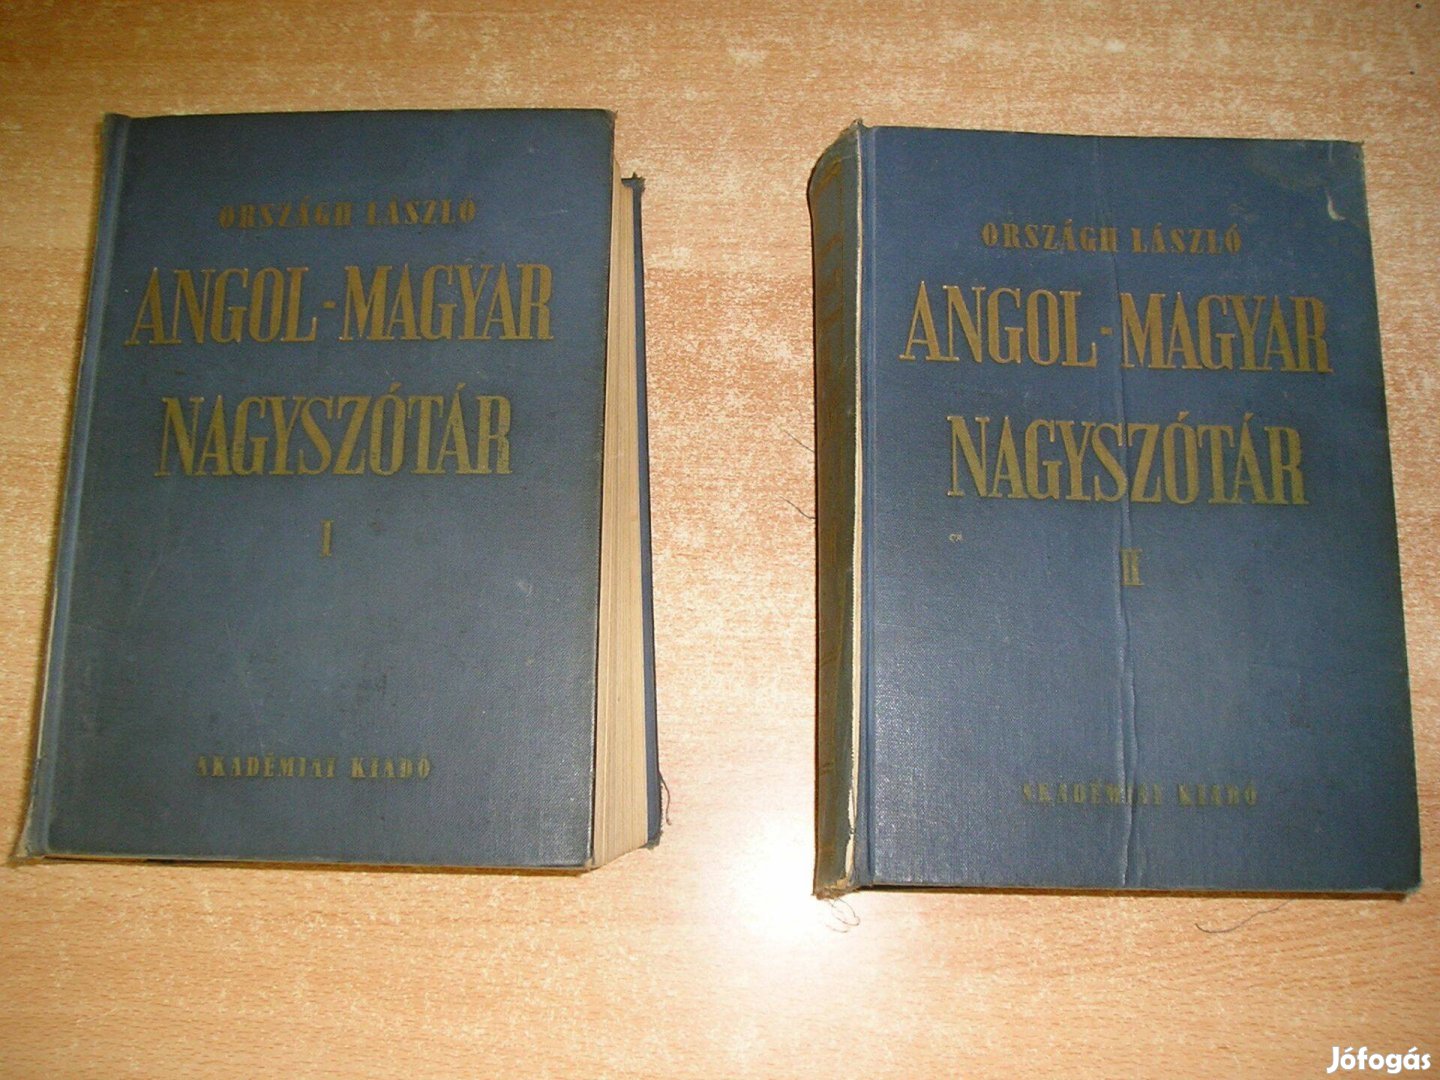 Angol-magyar nagyszótár 1-2